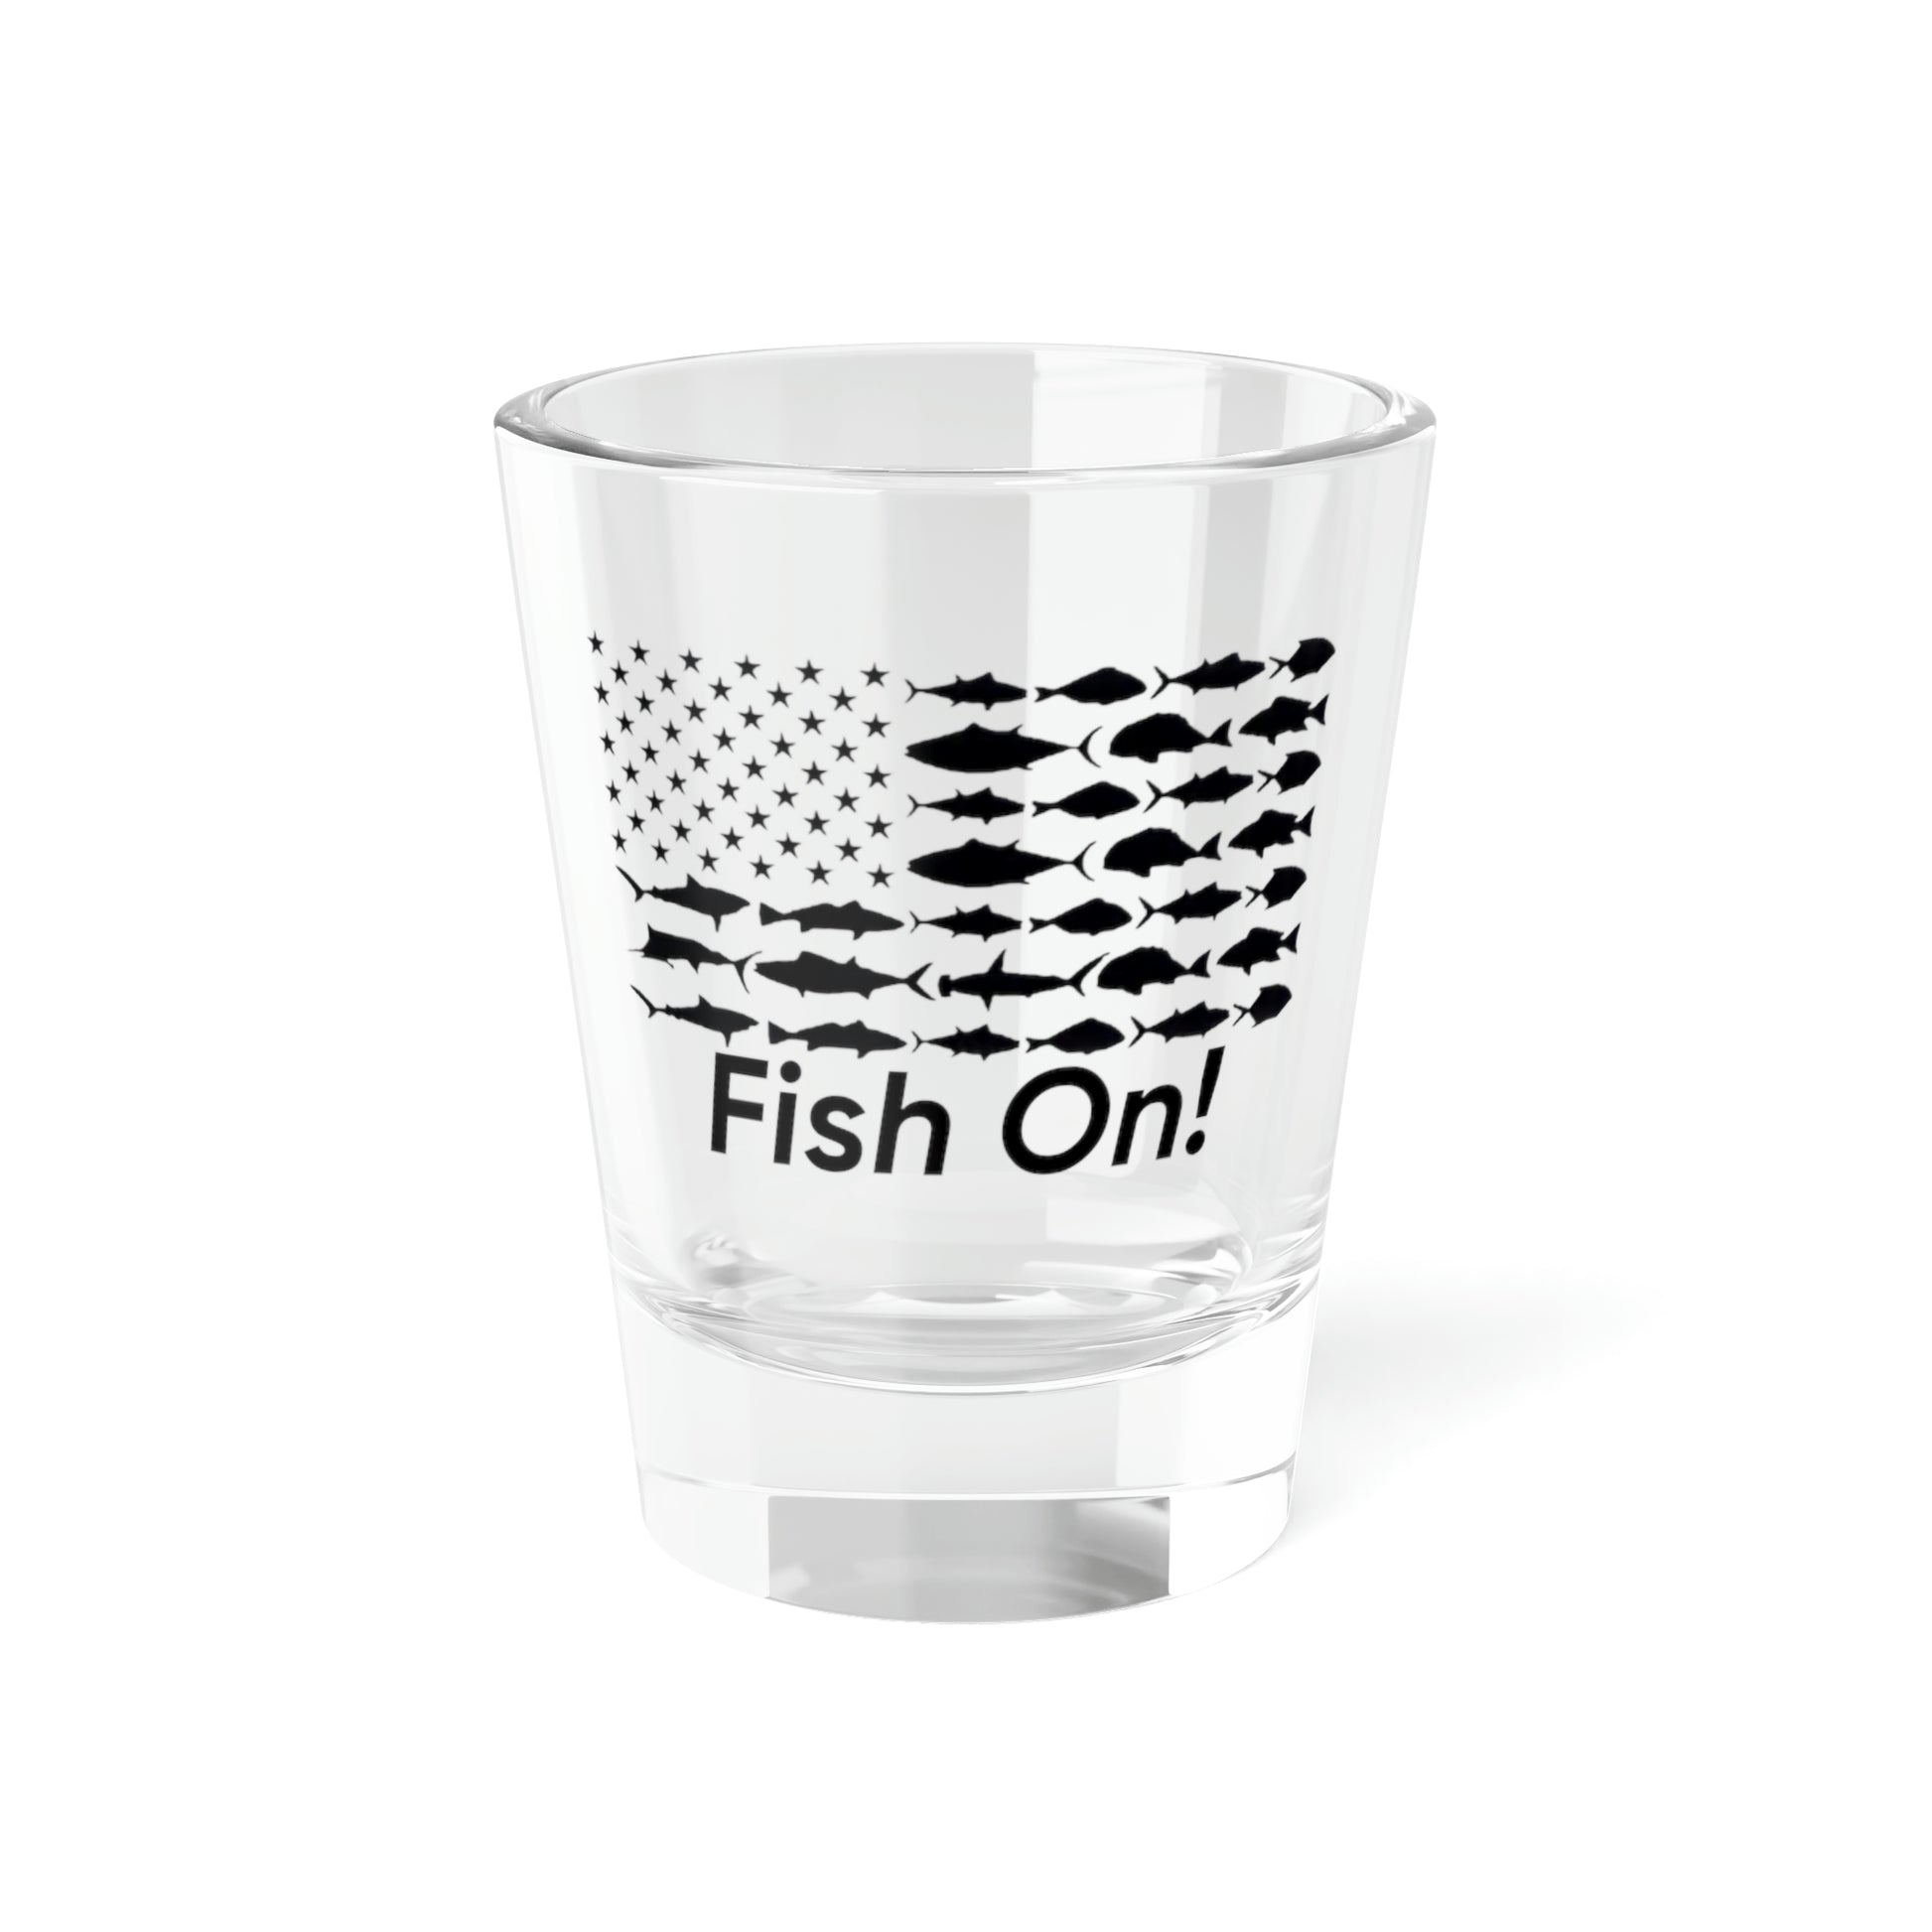 Fish On! Shot Glass, 1.5oz - Backwoods Branding Co.